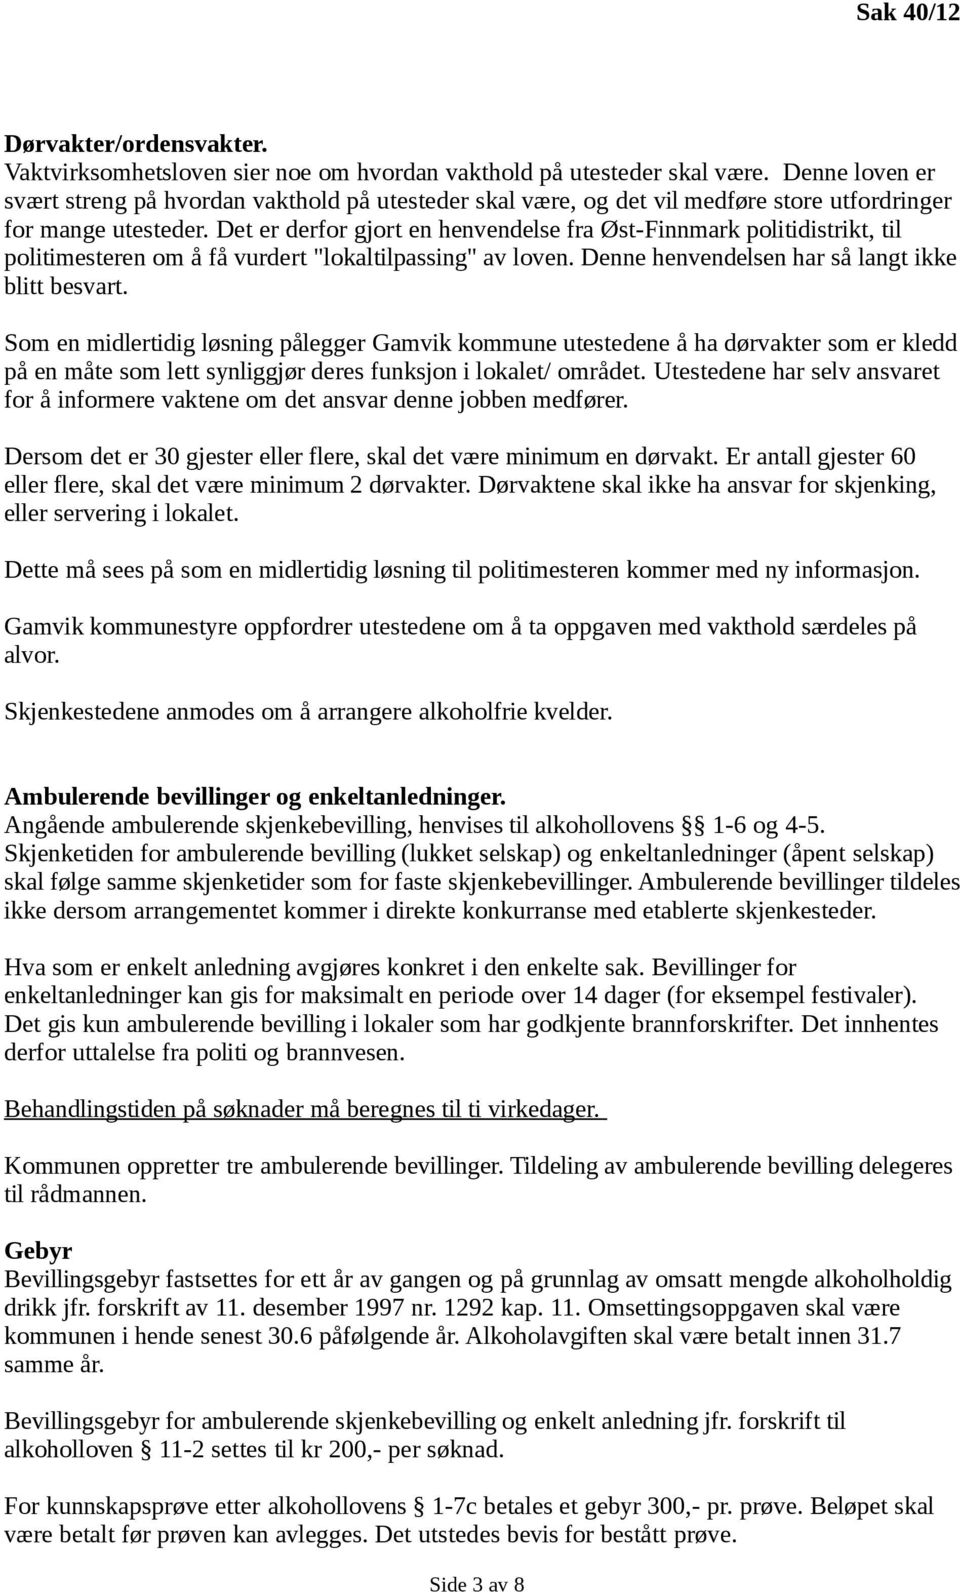 Det er derfor gjort en henvendelse fra Øst-Finnmark politidistrikt, til politimesteren om å få vurdert "lokaltilpassing" av loven. Denne henvendelsen har så langt ikke blitt besvart.